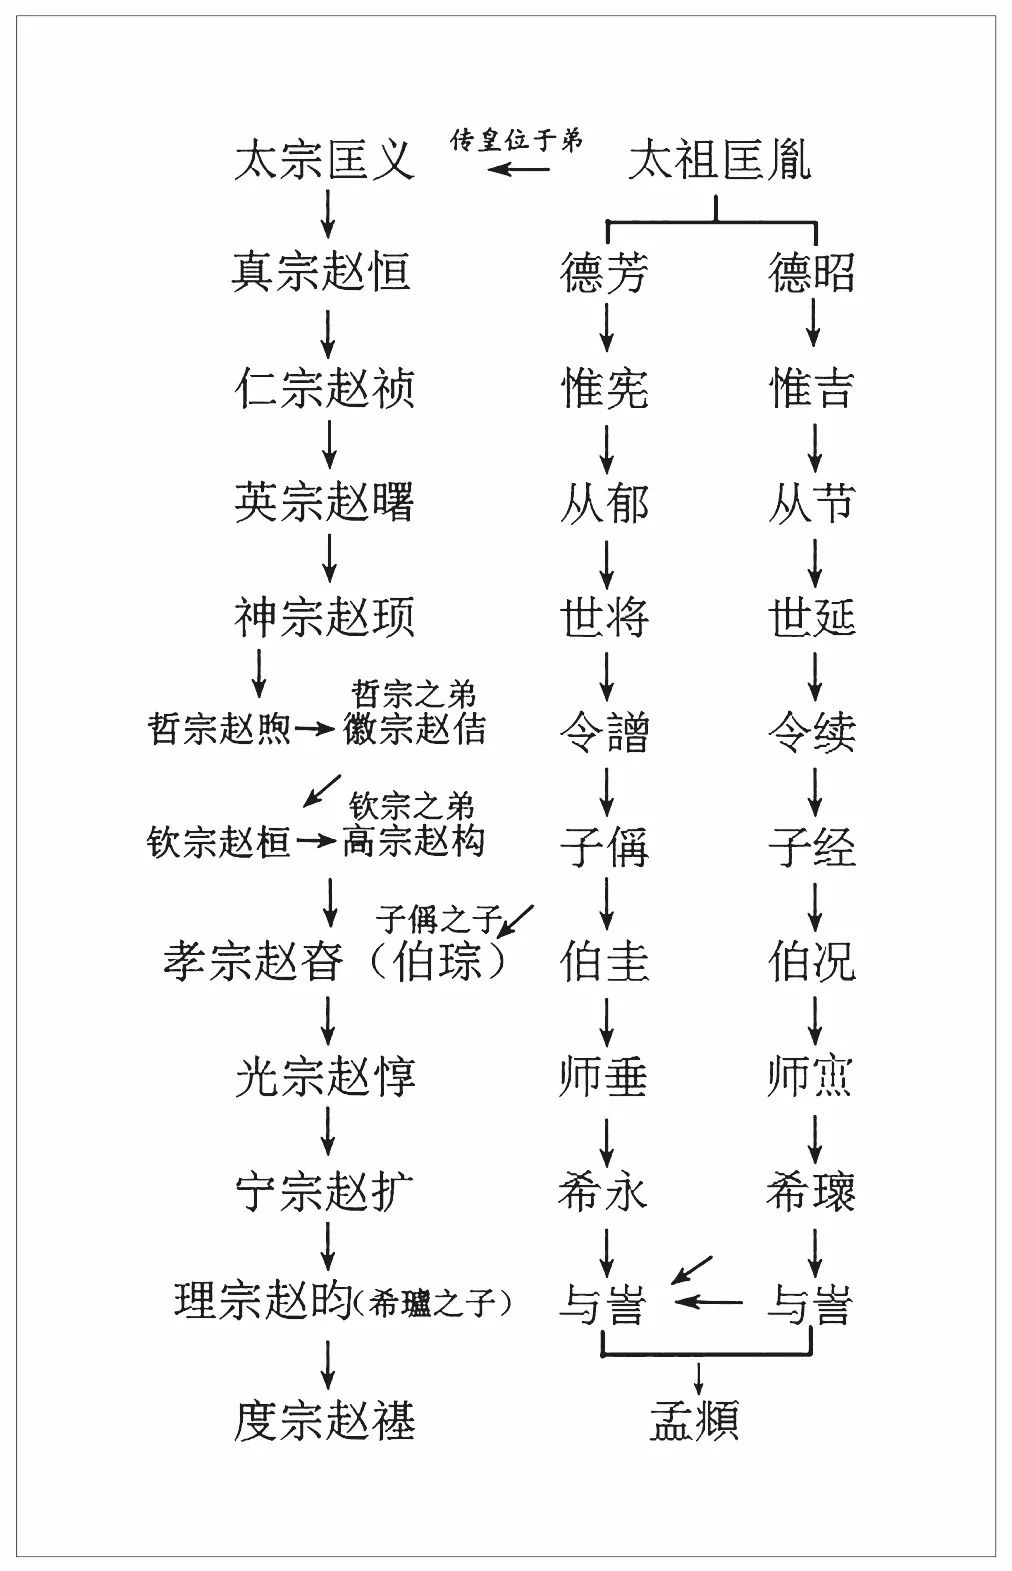 德芳的后裔,属于宋太祖的第十一代子孙(详见赵孟頫世系与帝位血统